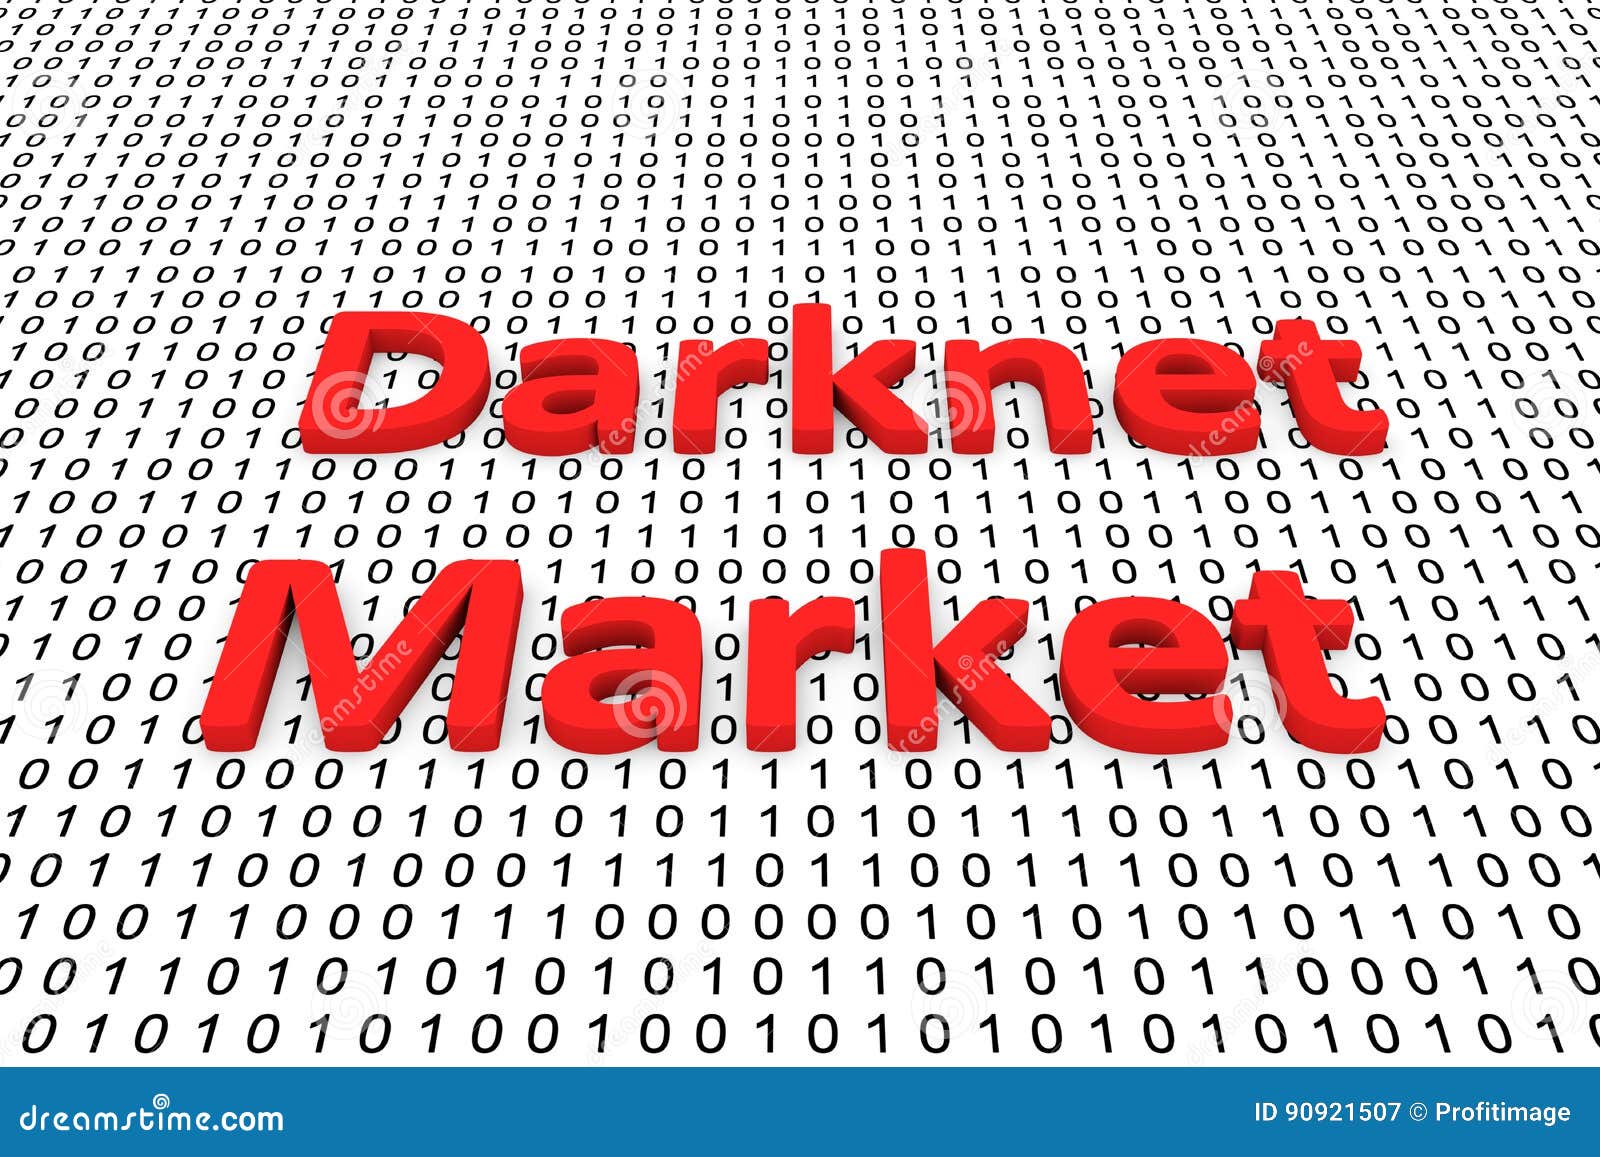 the darknet market